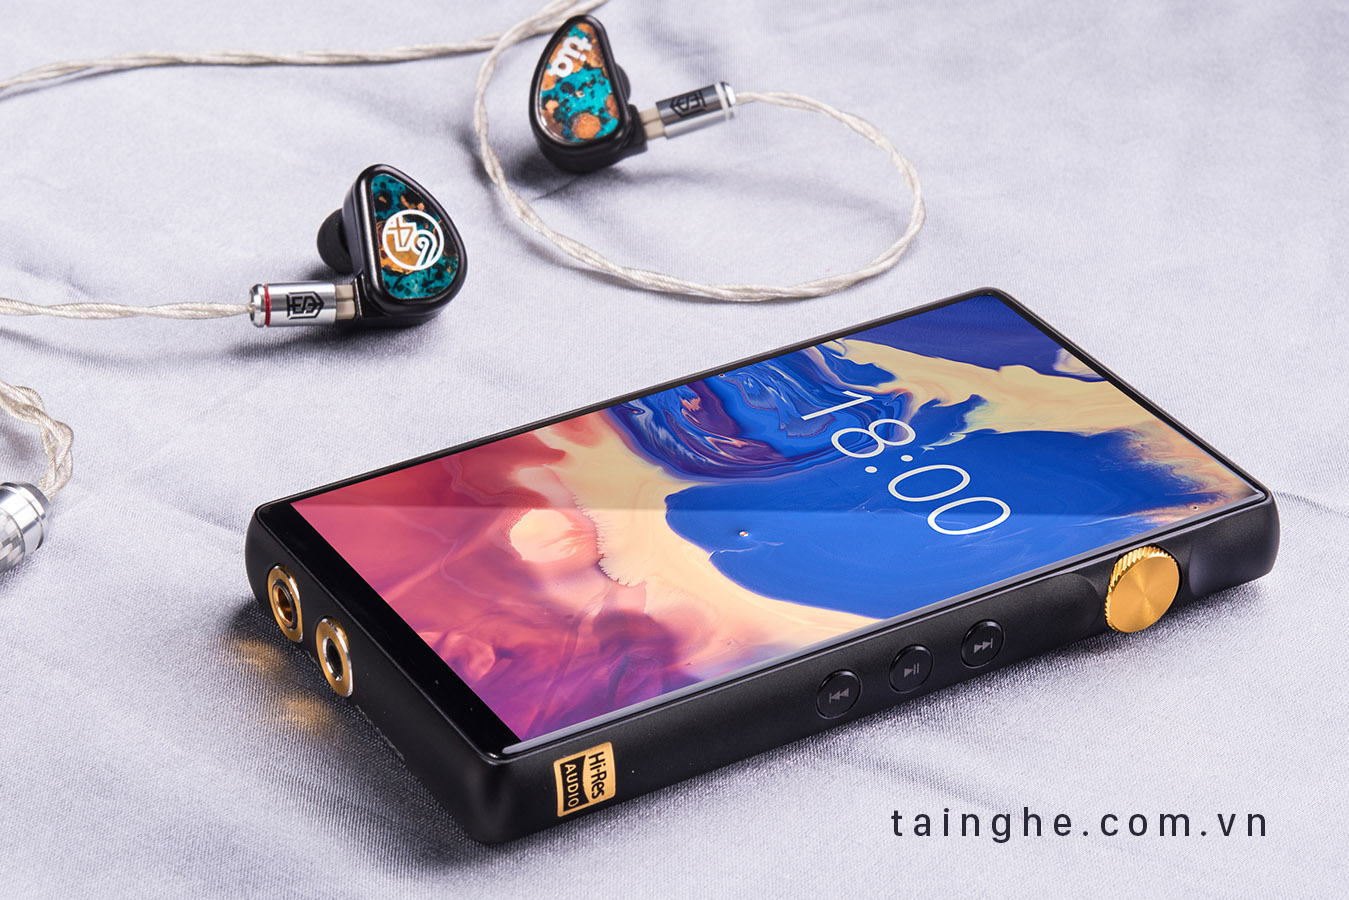 Đánh giá máy nghe nhạc iBasso DX160 : Đẹp, Balance 4.4mm và âm thanh trung tính nhất tầm giá